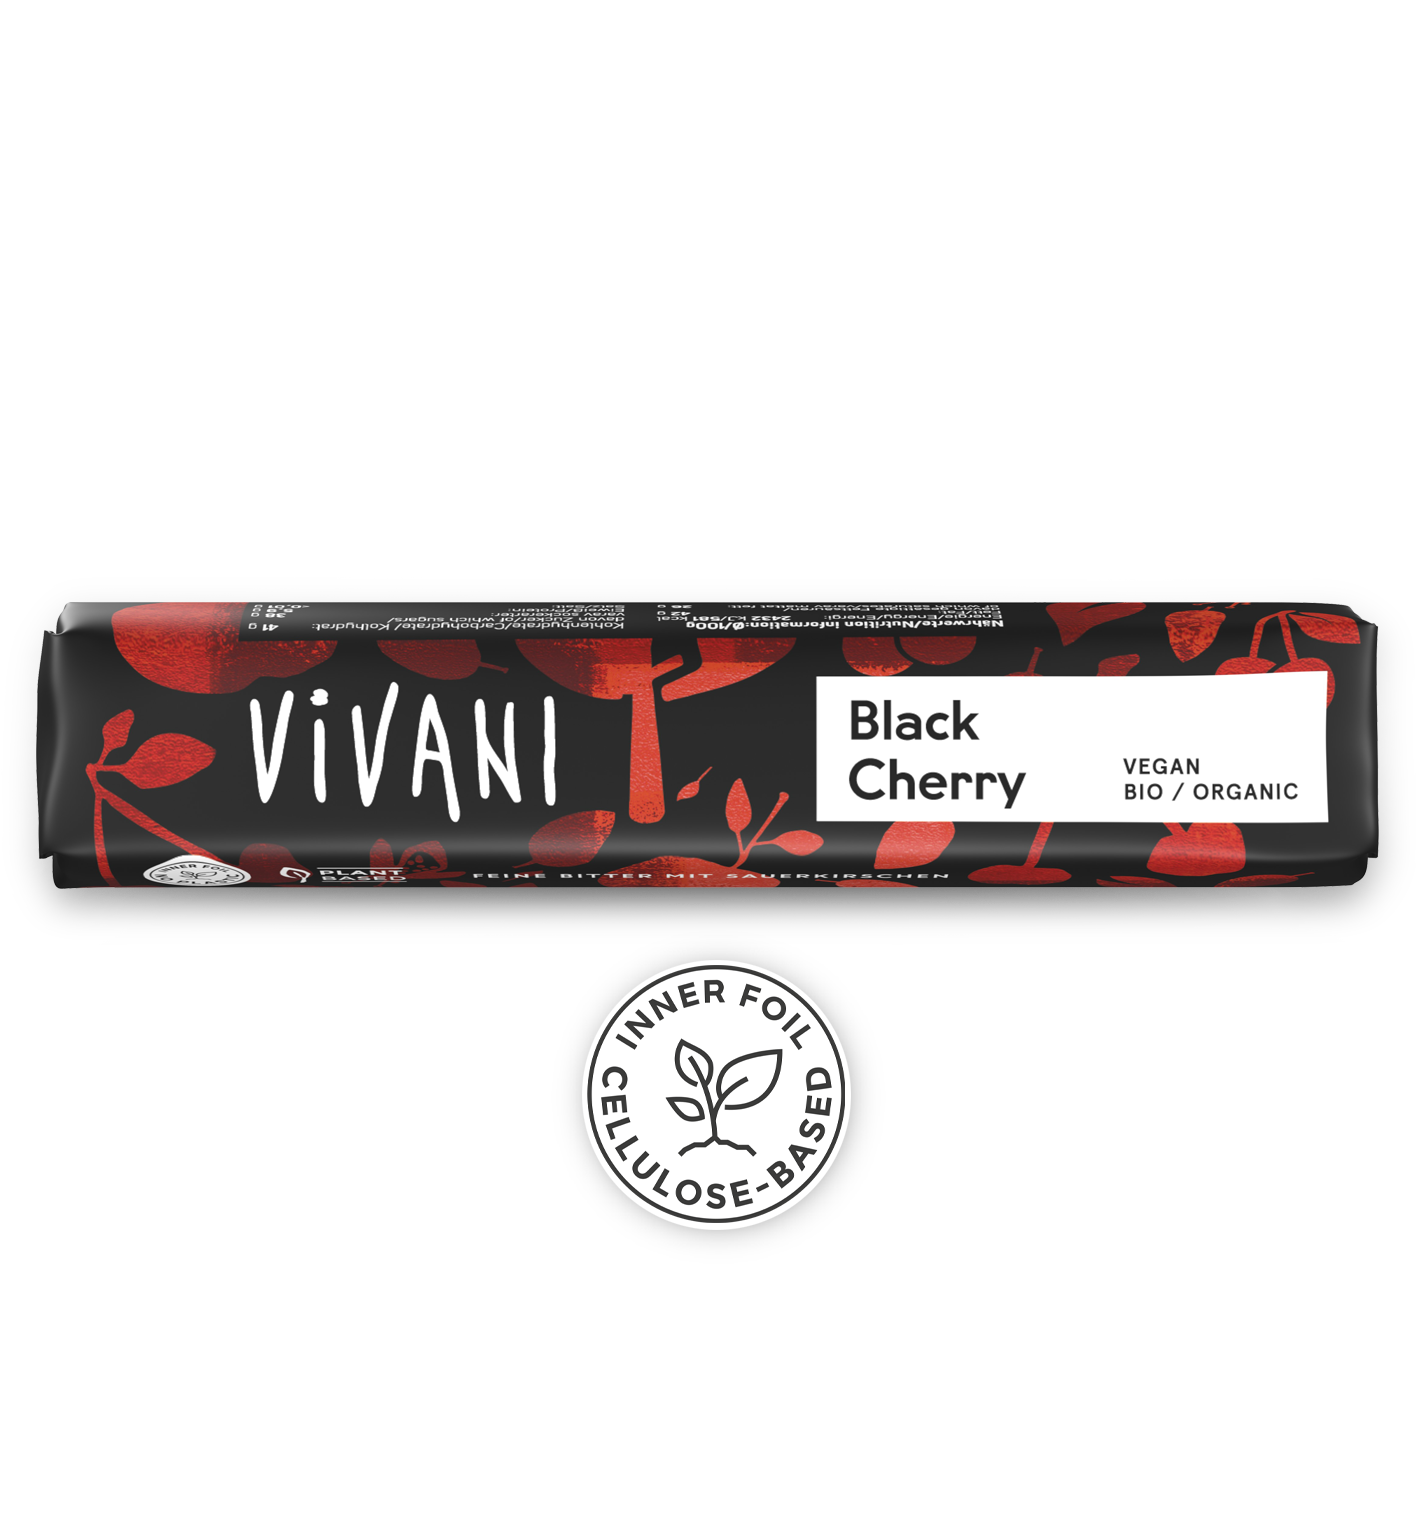 VIVANI veganská bio čokoládová tyčinka Black Cherry s višňovou křupavostí